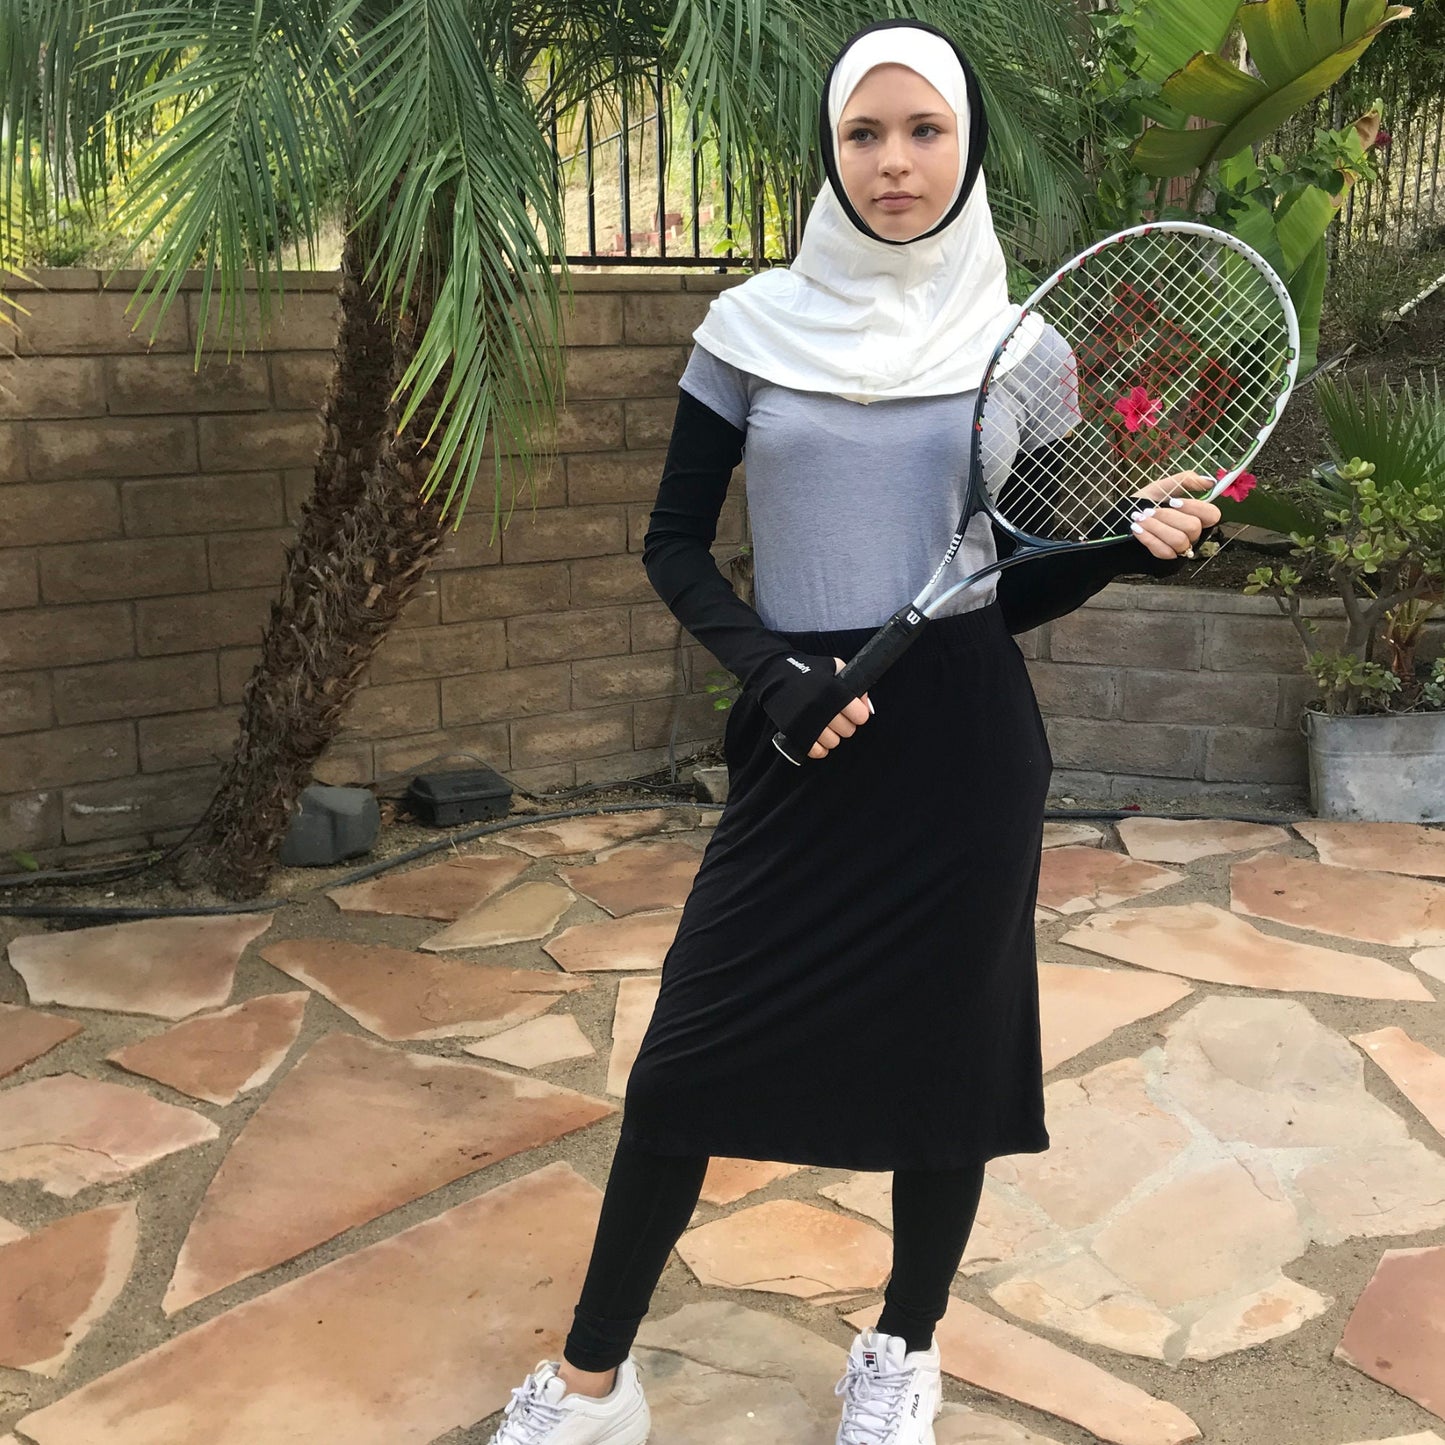 Tennis Hijab, Sports Hijab, Golf Hijab. Lifestyle Hijab, Gym Hijab, Sports Hijab, Exercise Hijab, Activewear Hijab, Hijab for Working Out